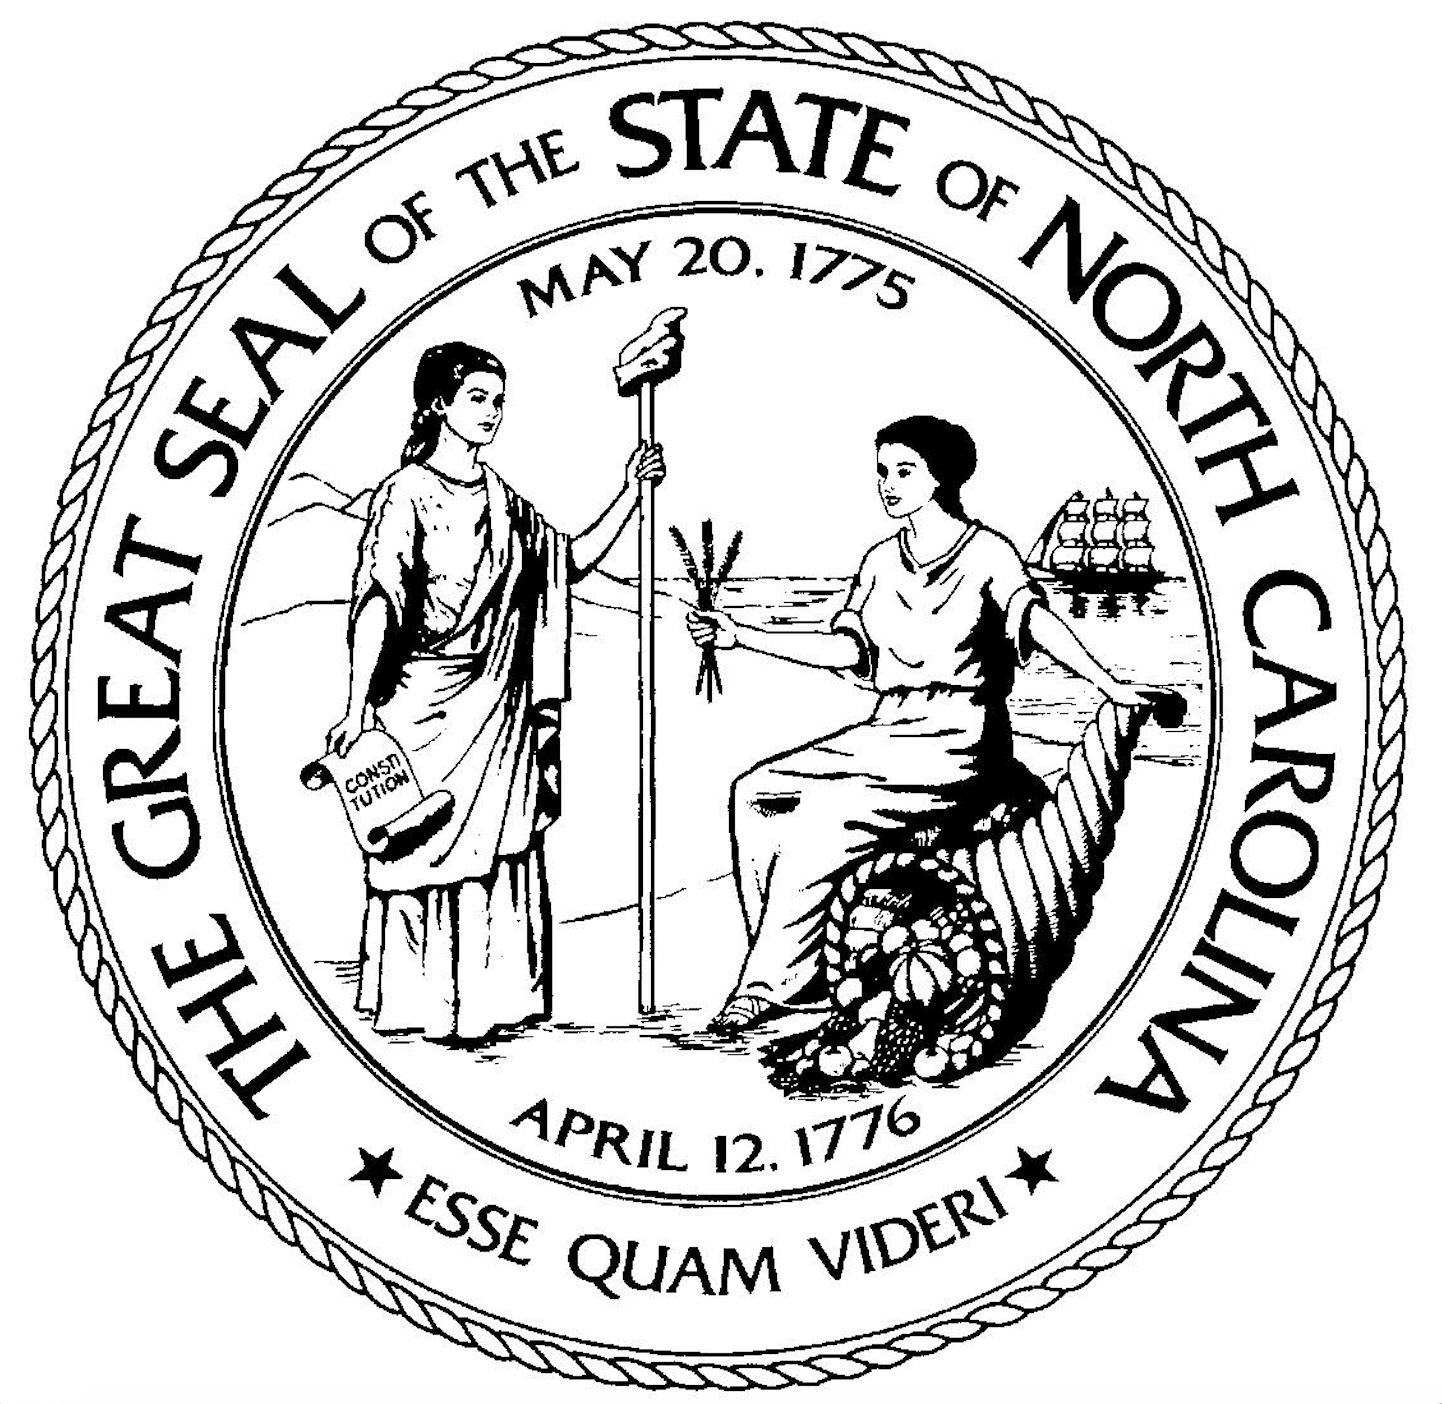 The North Carolina Society of New York